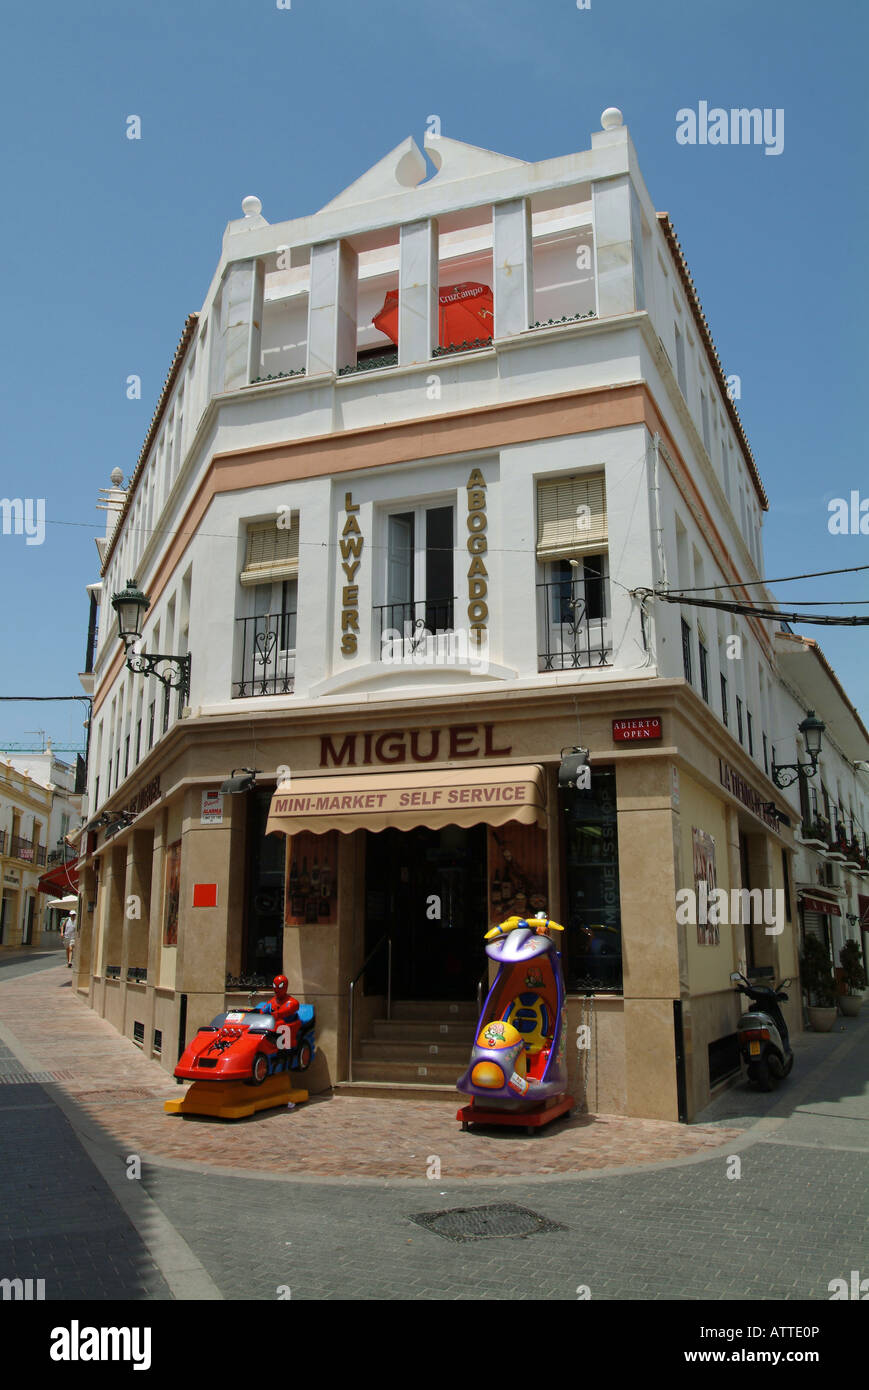 Nerja. Straßen von Nerja. Geschäfte, Einkaufsmöglichkeiten, Touristen. Costa del Sol-Provinz von Malaga. Andalucia. Andalusien. Spanien. Stockfoto